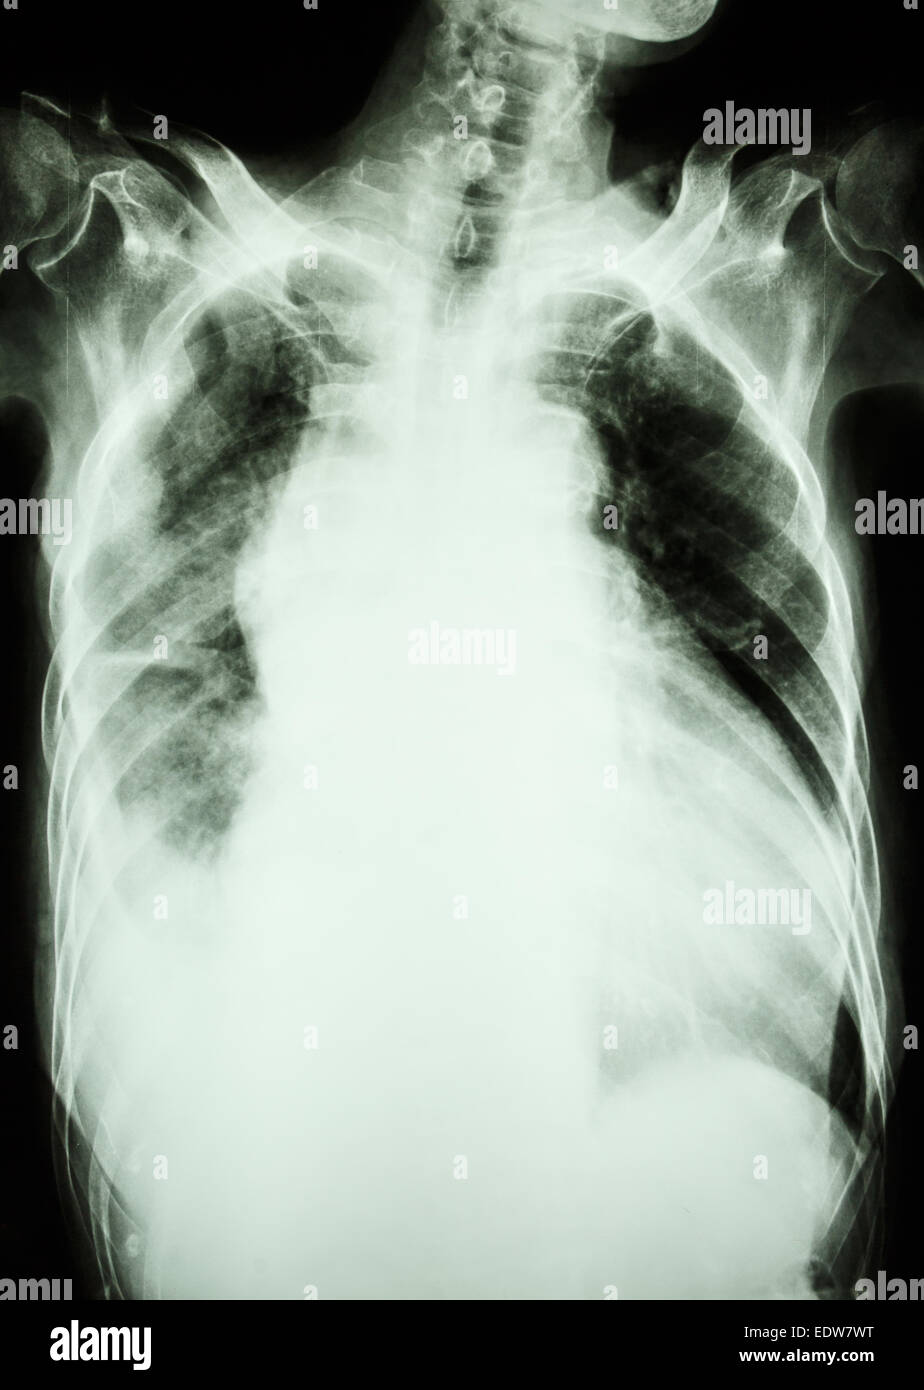 Film X-ray show infiltrarsi e effusione al polmone destro da infezione da Mycobacterium tuberculosis (tubercolosi polmonare) Foto Stock